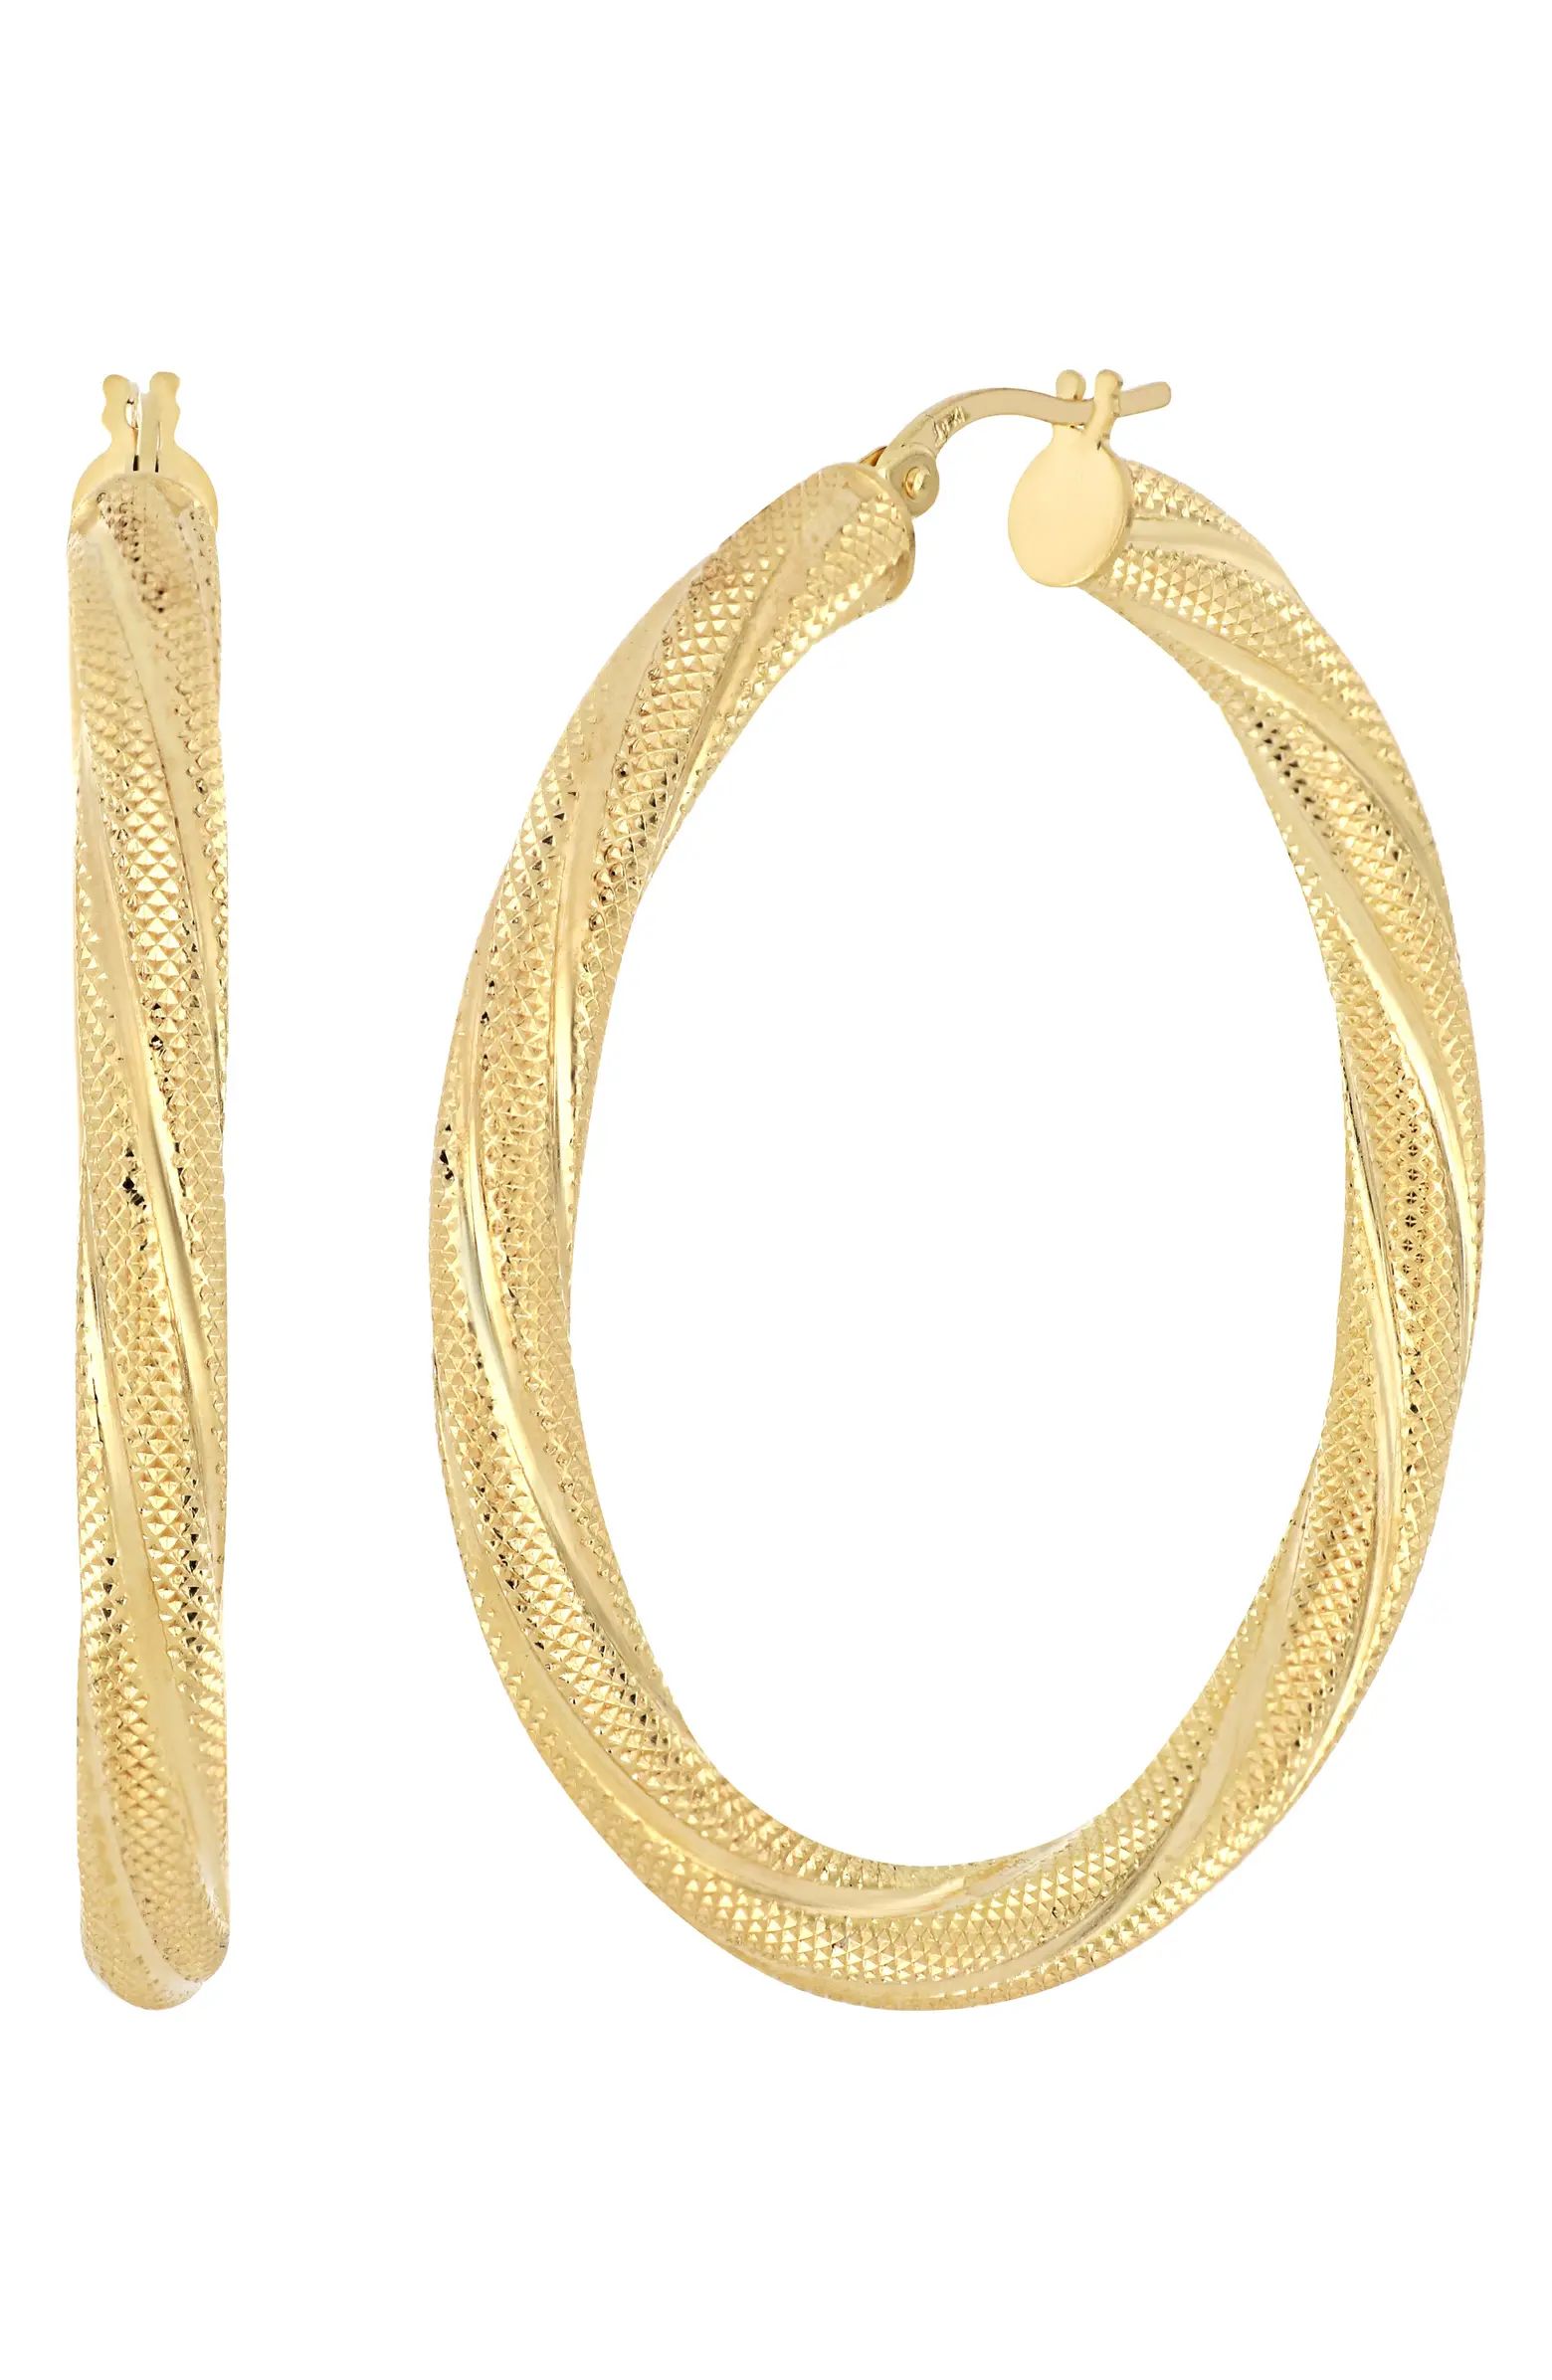 Bony Levy Katharine 14K Gold Twisted Hoop Earrings | Nordstrom | Nordstrom